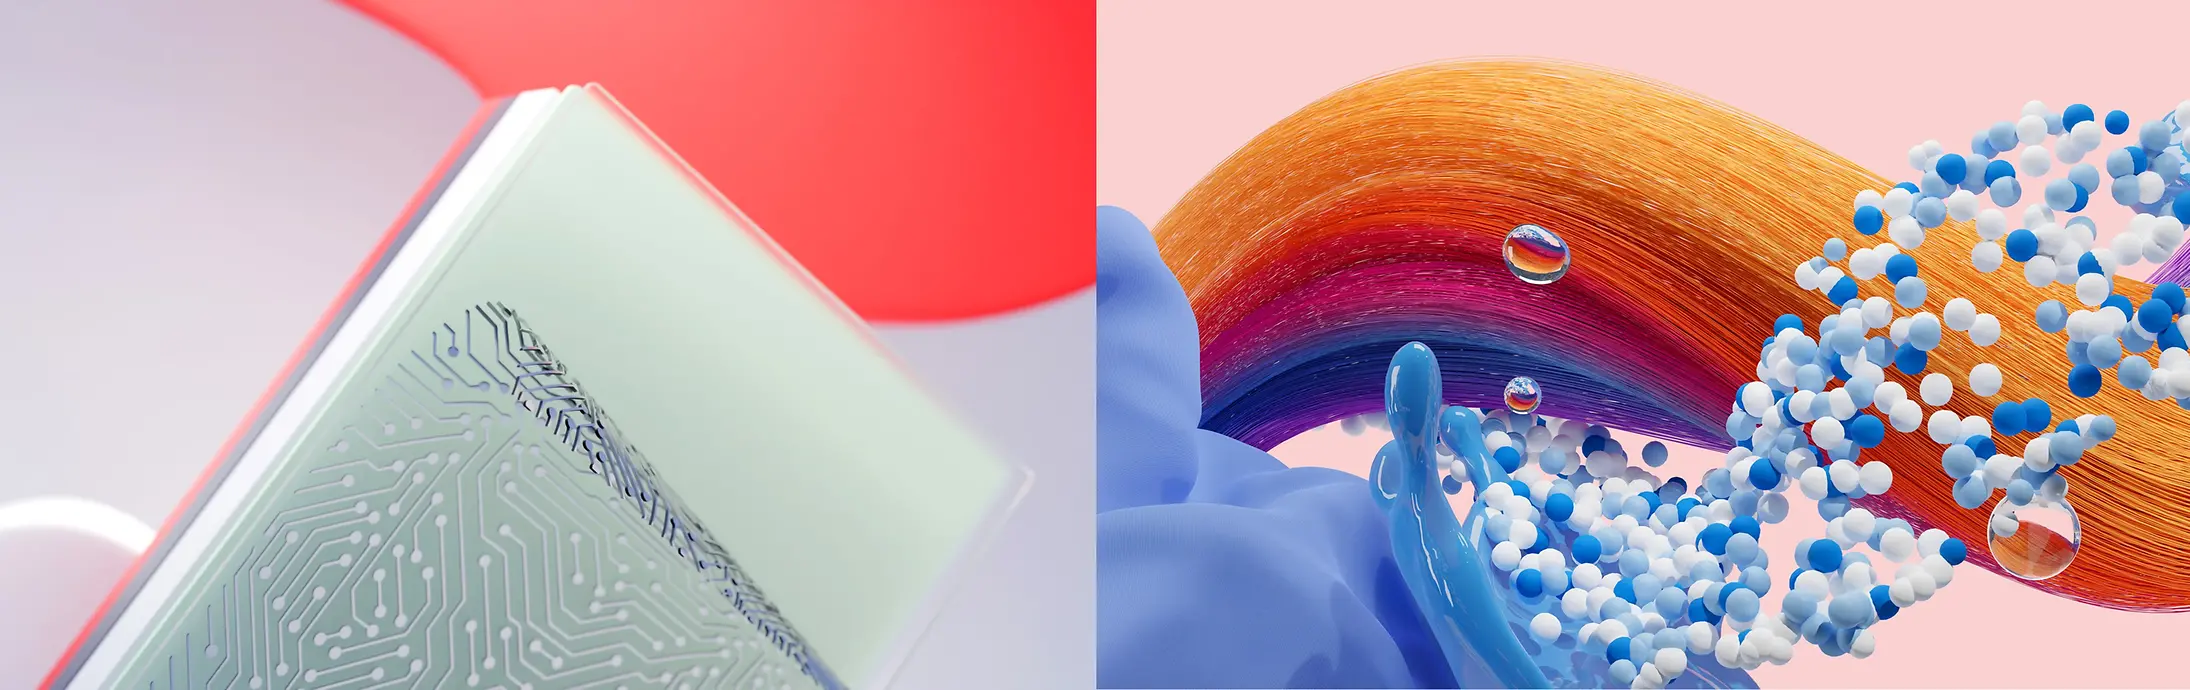 Abstrakt bild som representerar Henkels företag Adhesive Technologies + Consumer Brands (Hair och Laundry & Home Care).